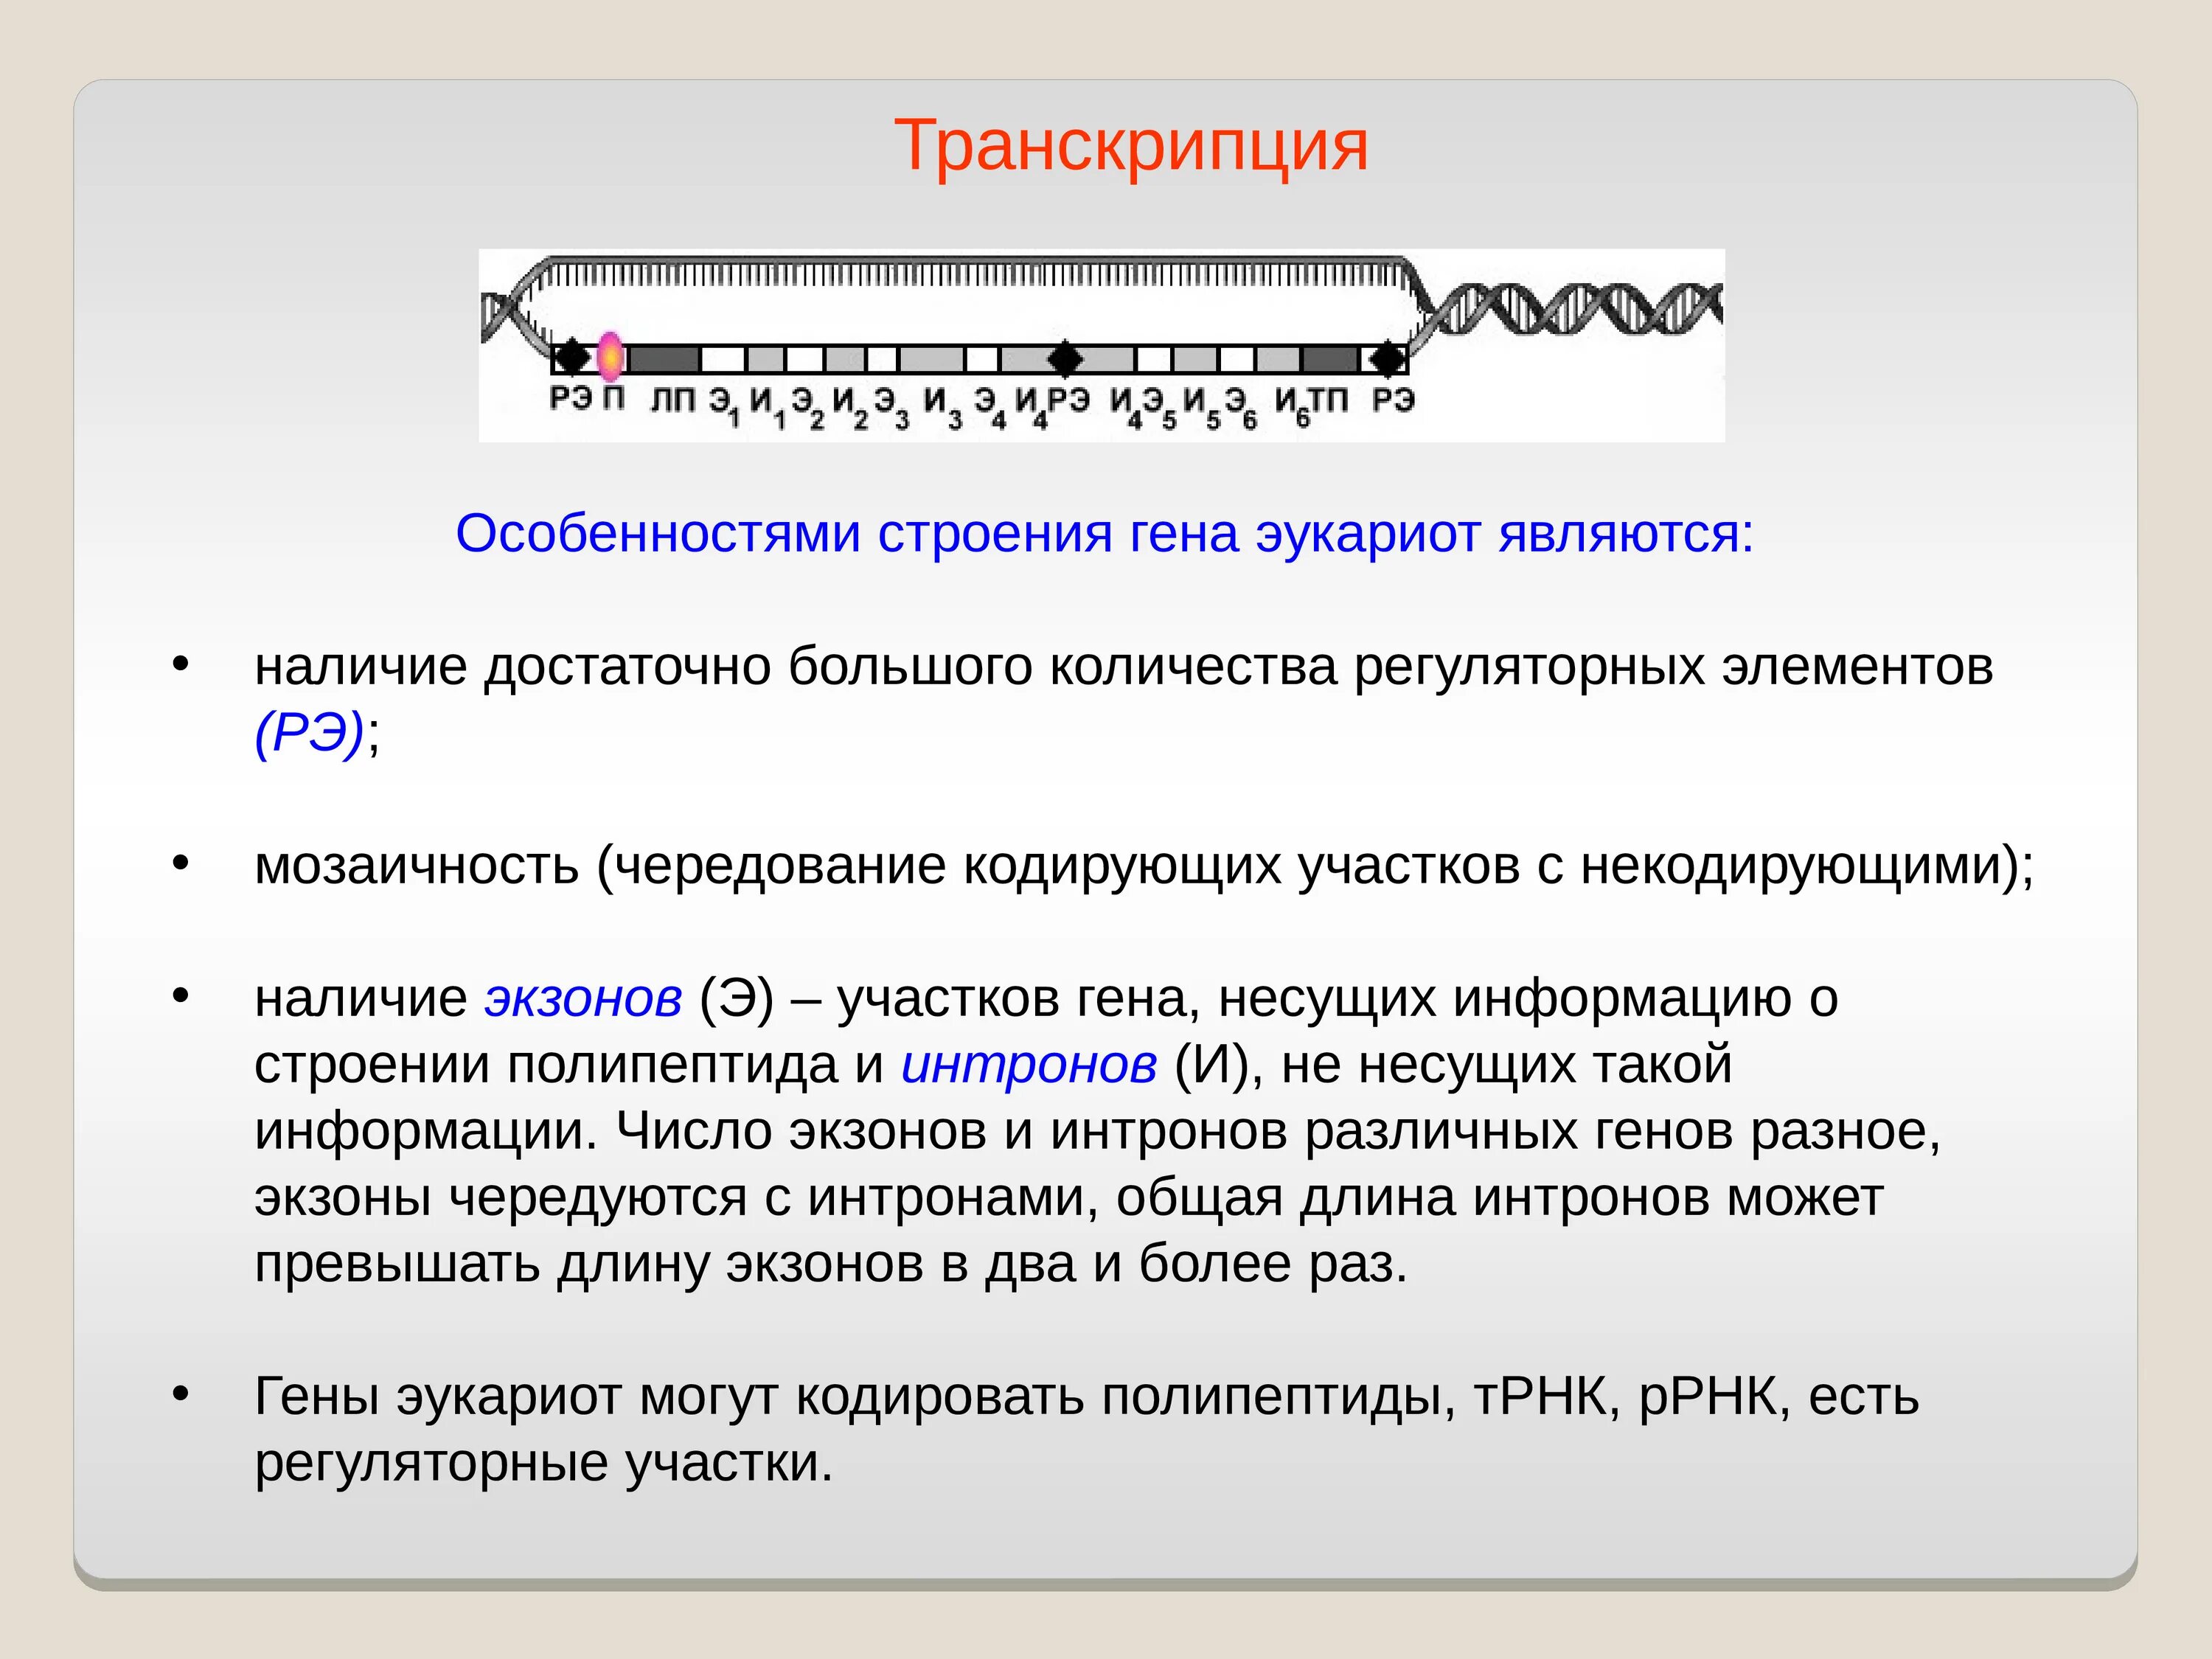 Hen транскрипция. Транскрипция характеристика. Особенности транскрипции. Особенности транскрипции генов эукариот. Особенности строения транскрипции.